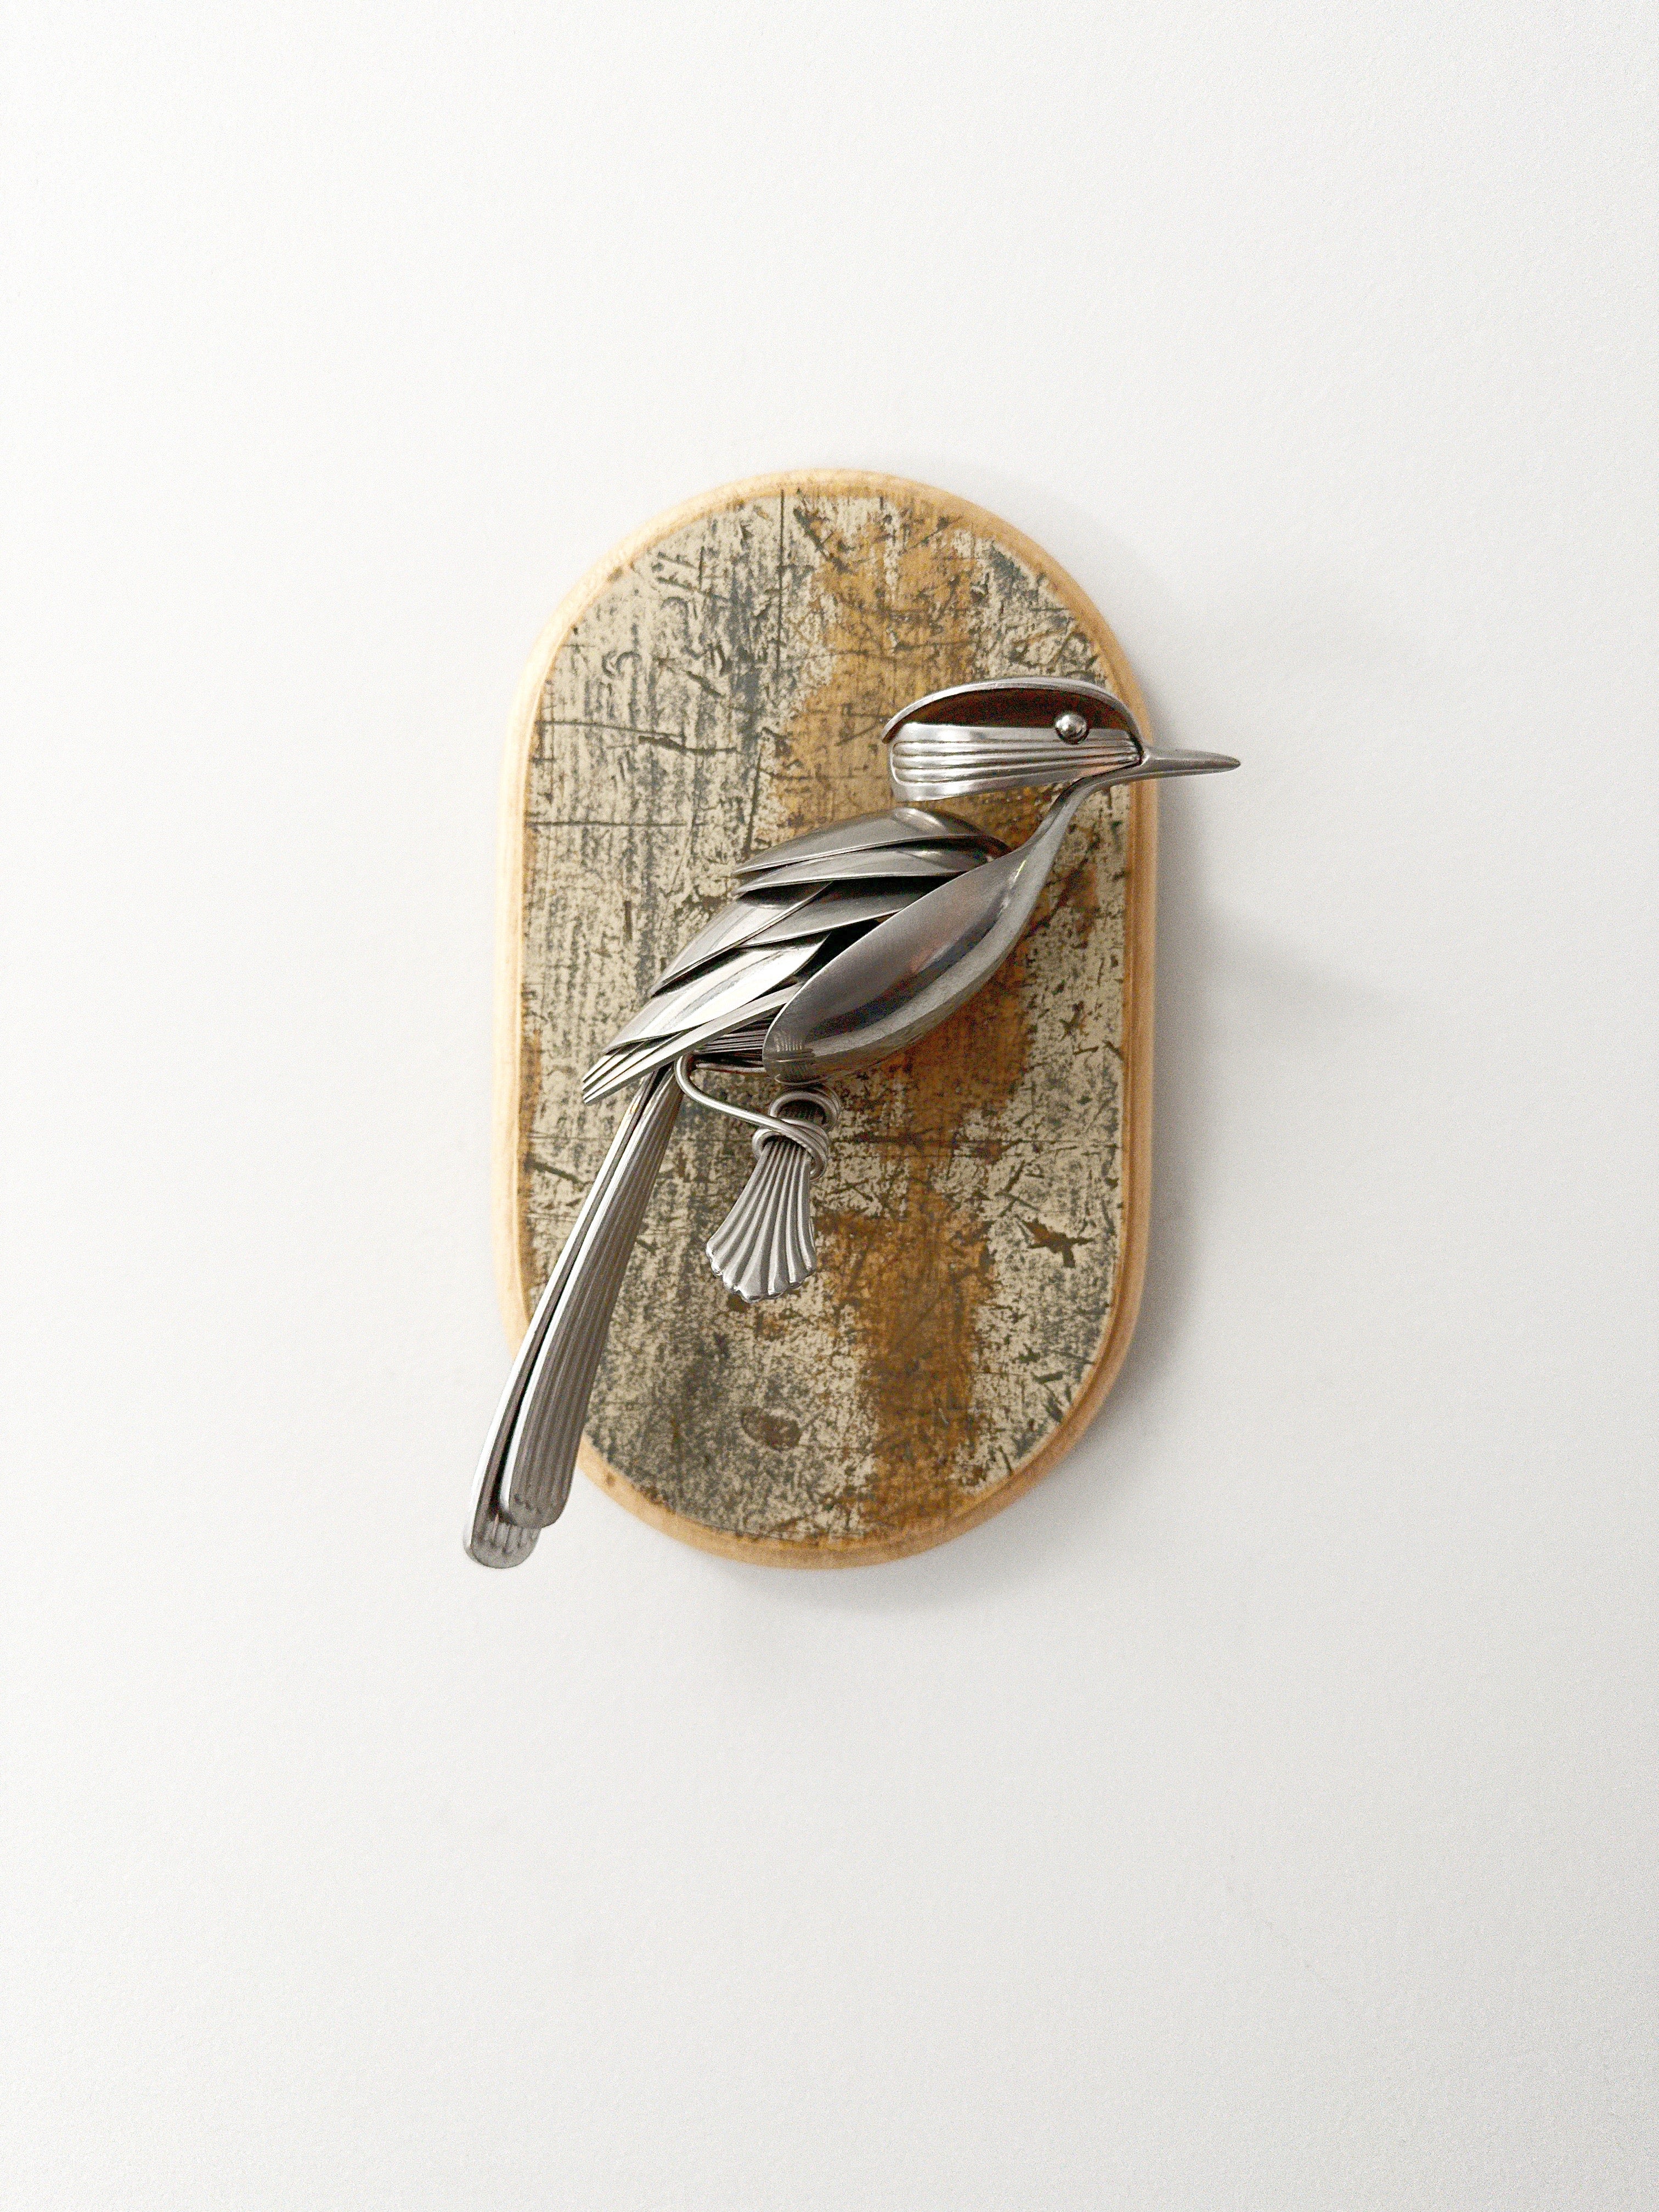 "Carol" - Metal Bird Sculpture